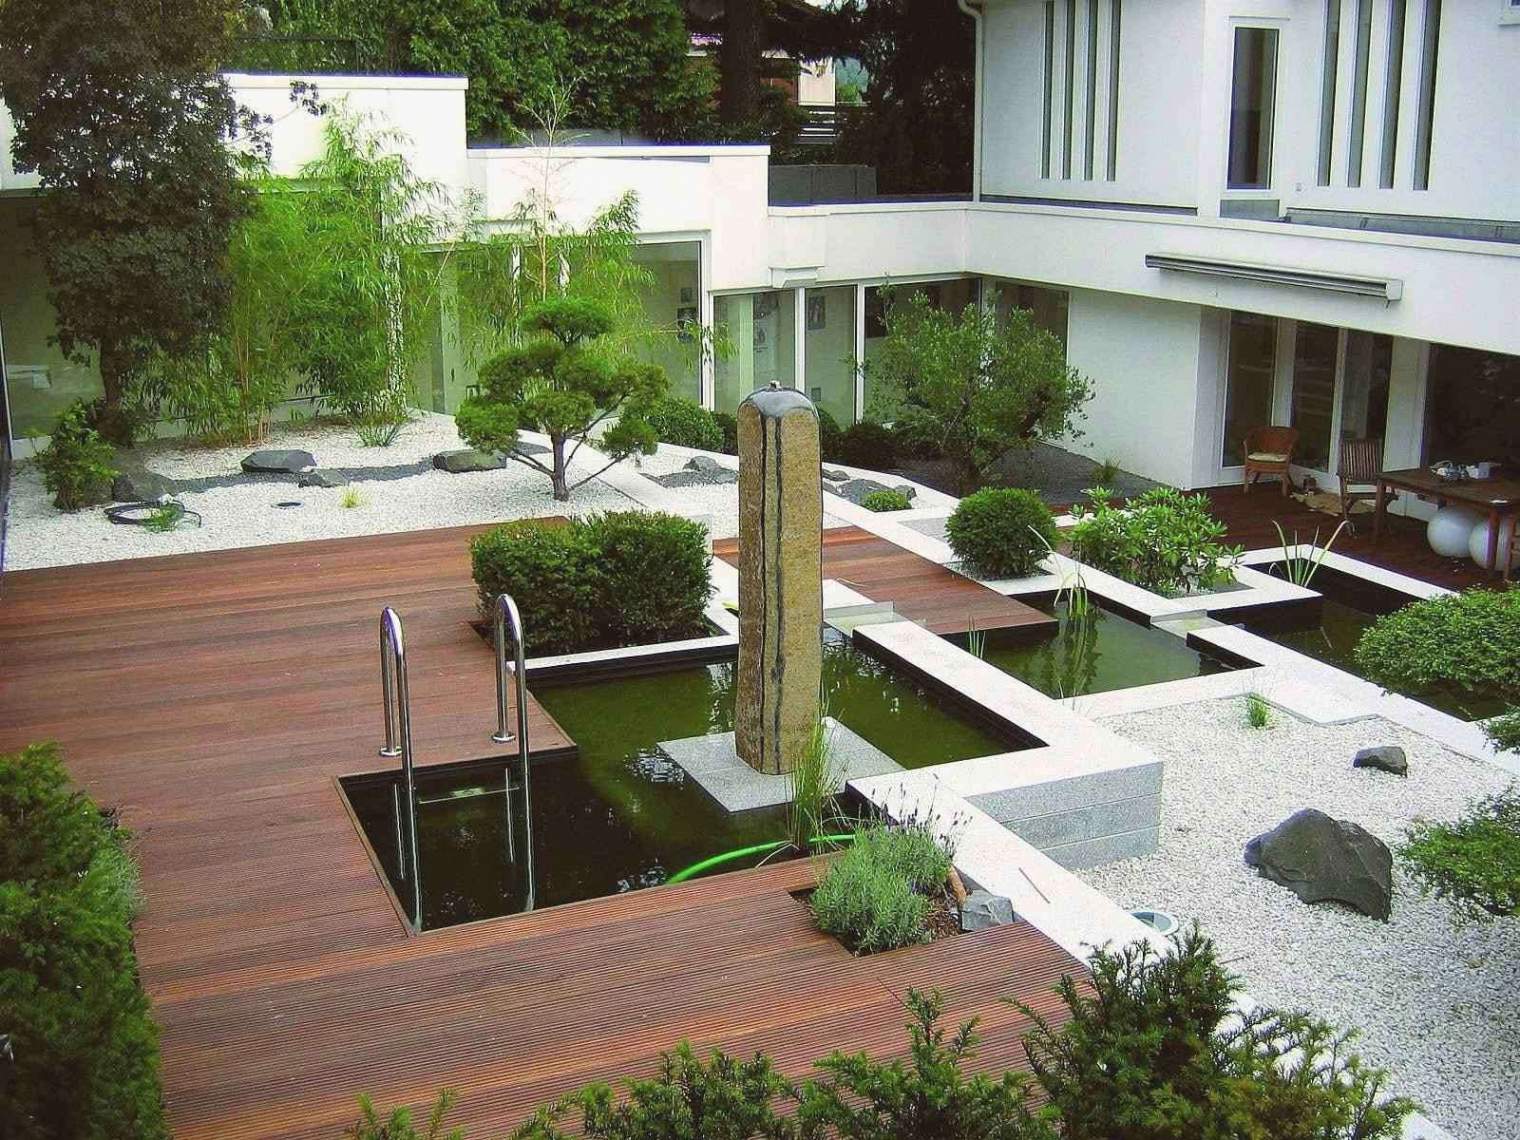 Ideen Für Kleine Gärten Schön 37 Das Beste Von Kleine Gärten Gestalten Beispiele Luxus